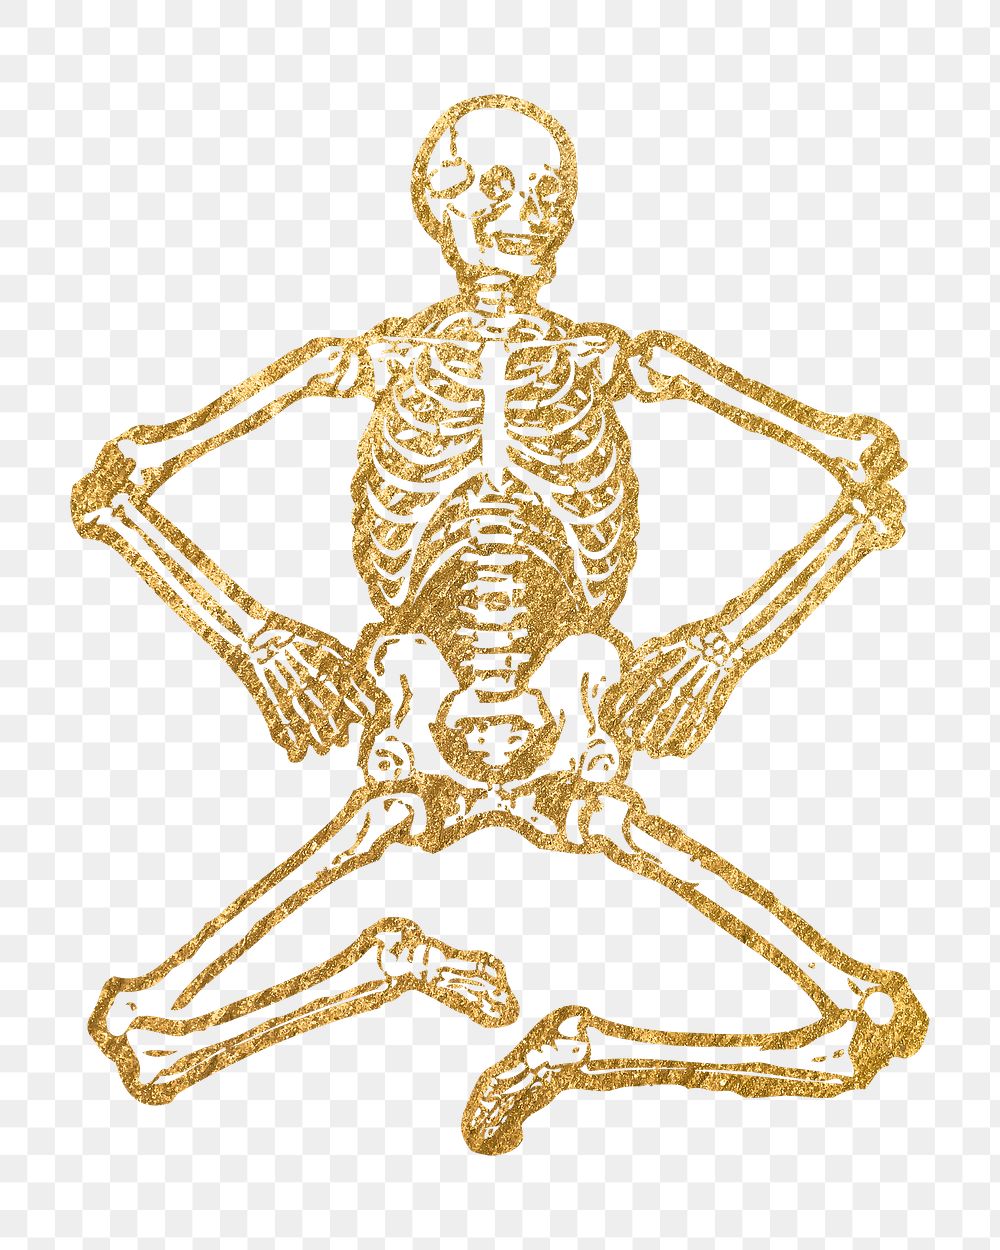 Gold skeleton png sticker, Halloween aesthetic illustration, transparent background